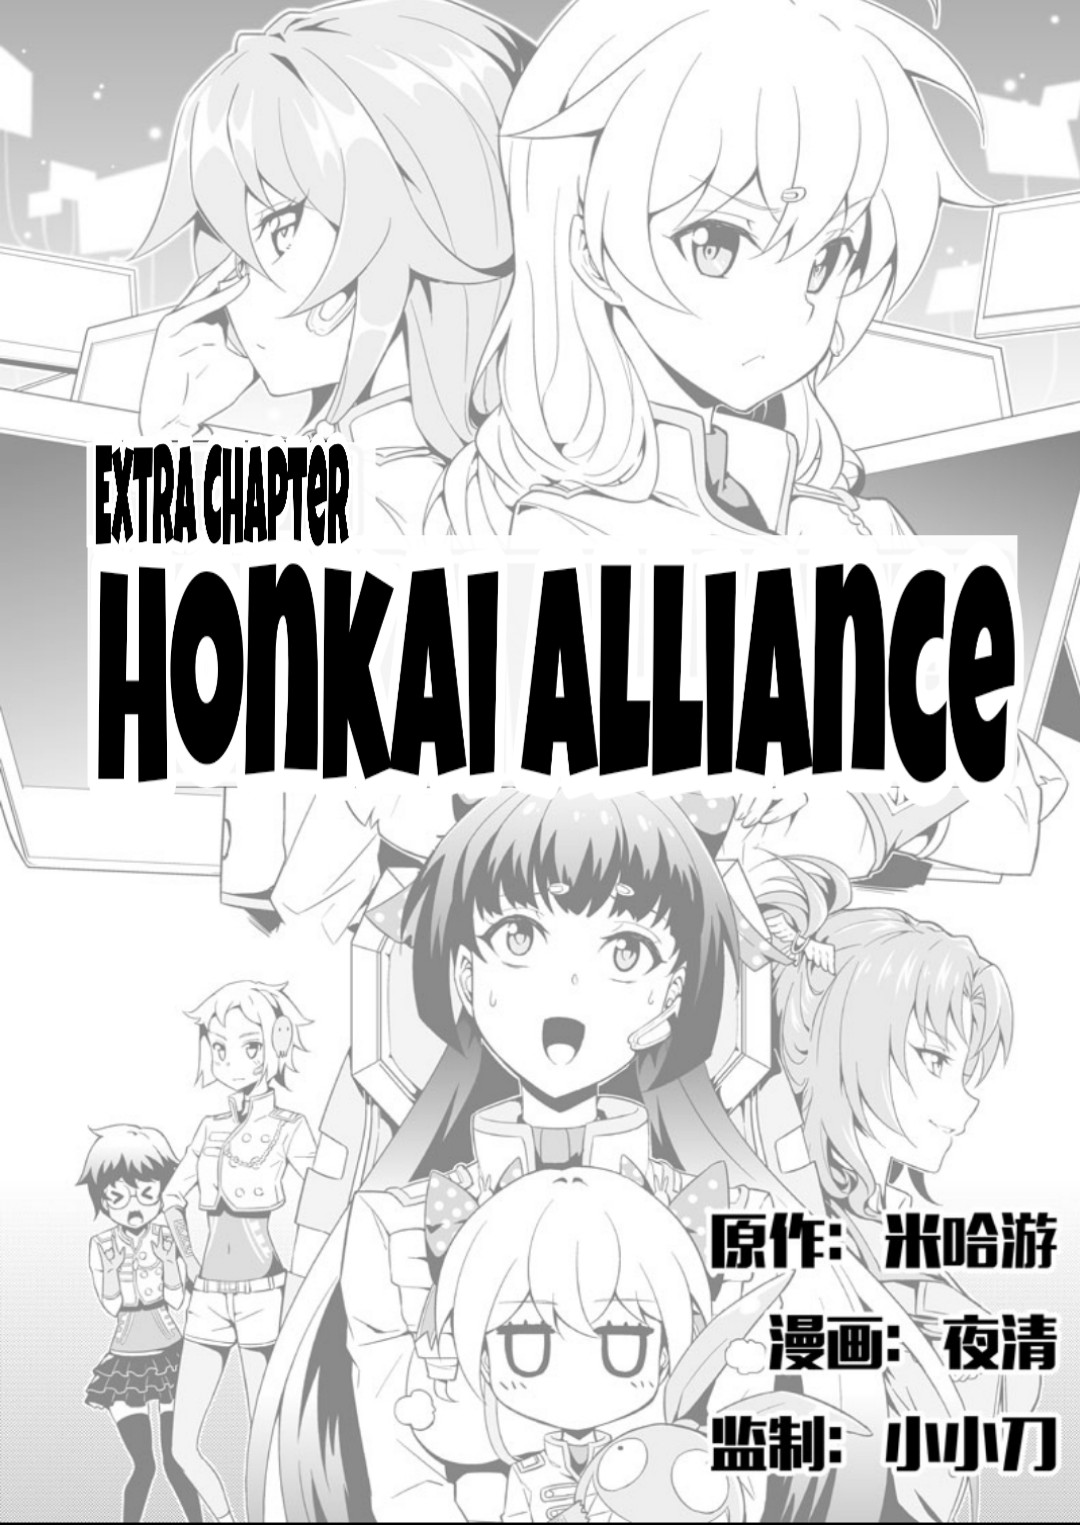 Houkai Gakuen EX Side stories Vol. 6 Honkai Alliance